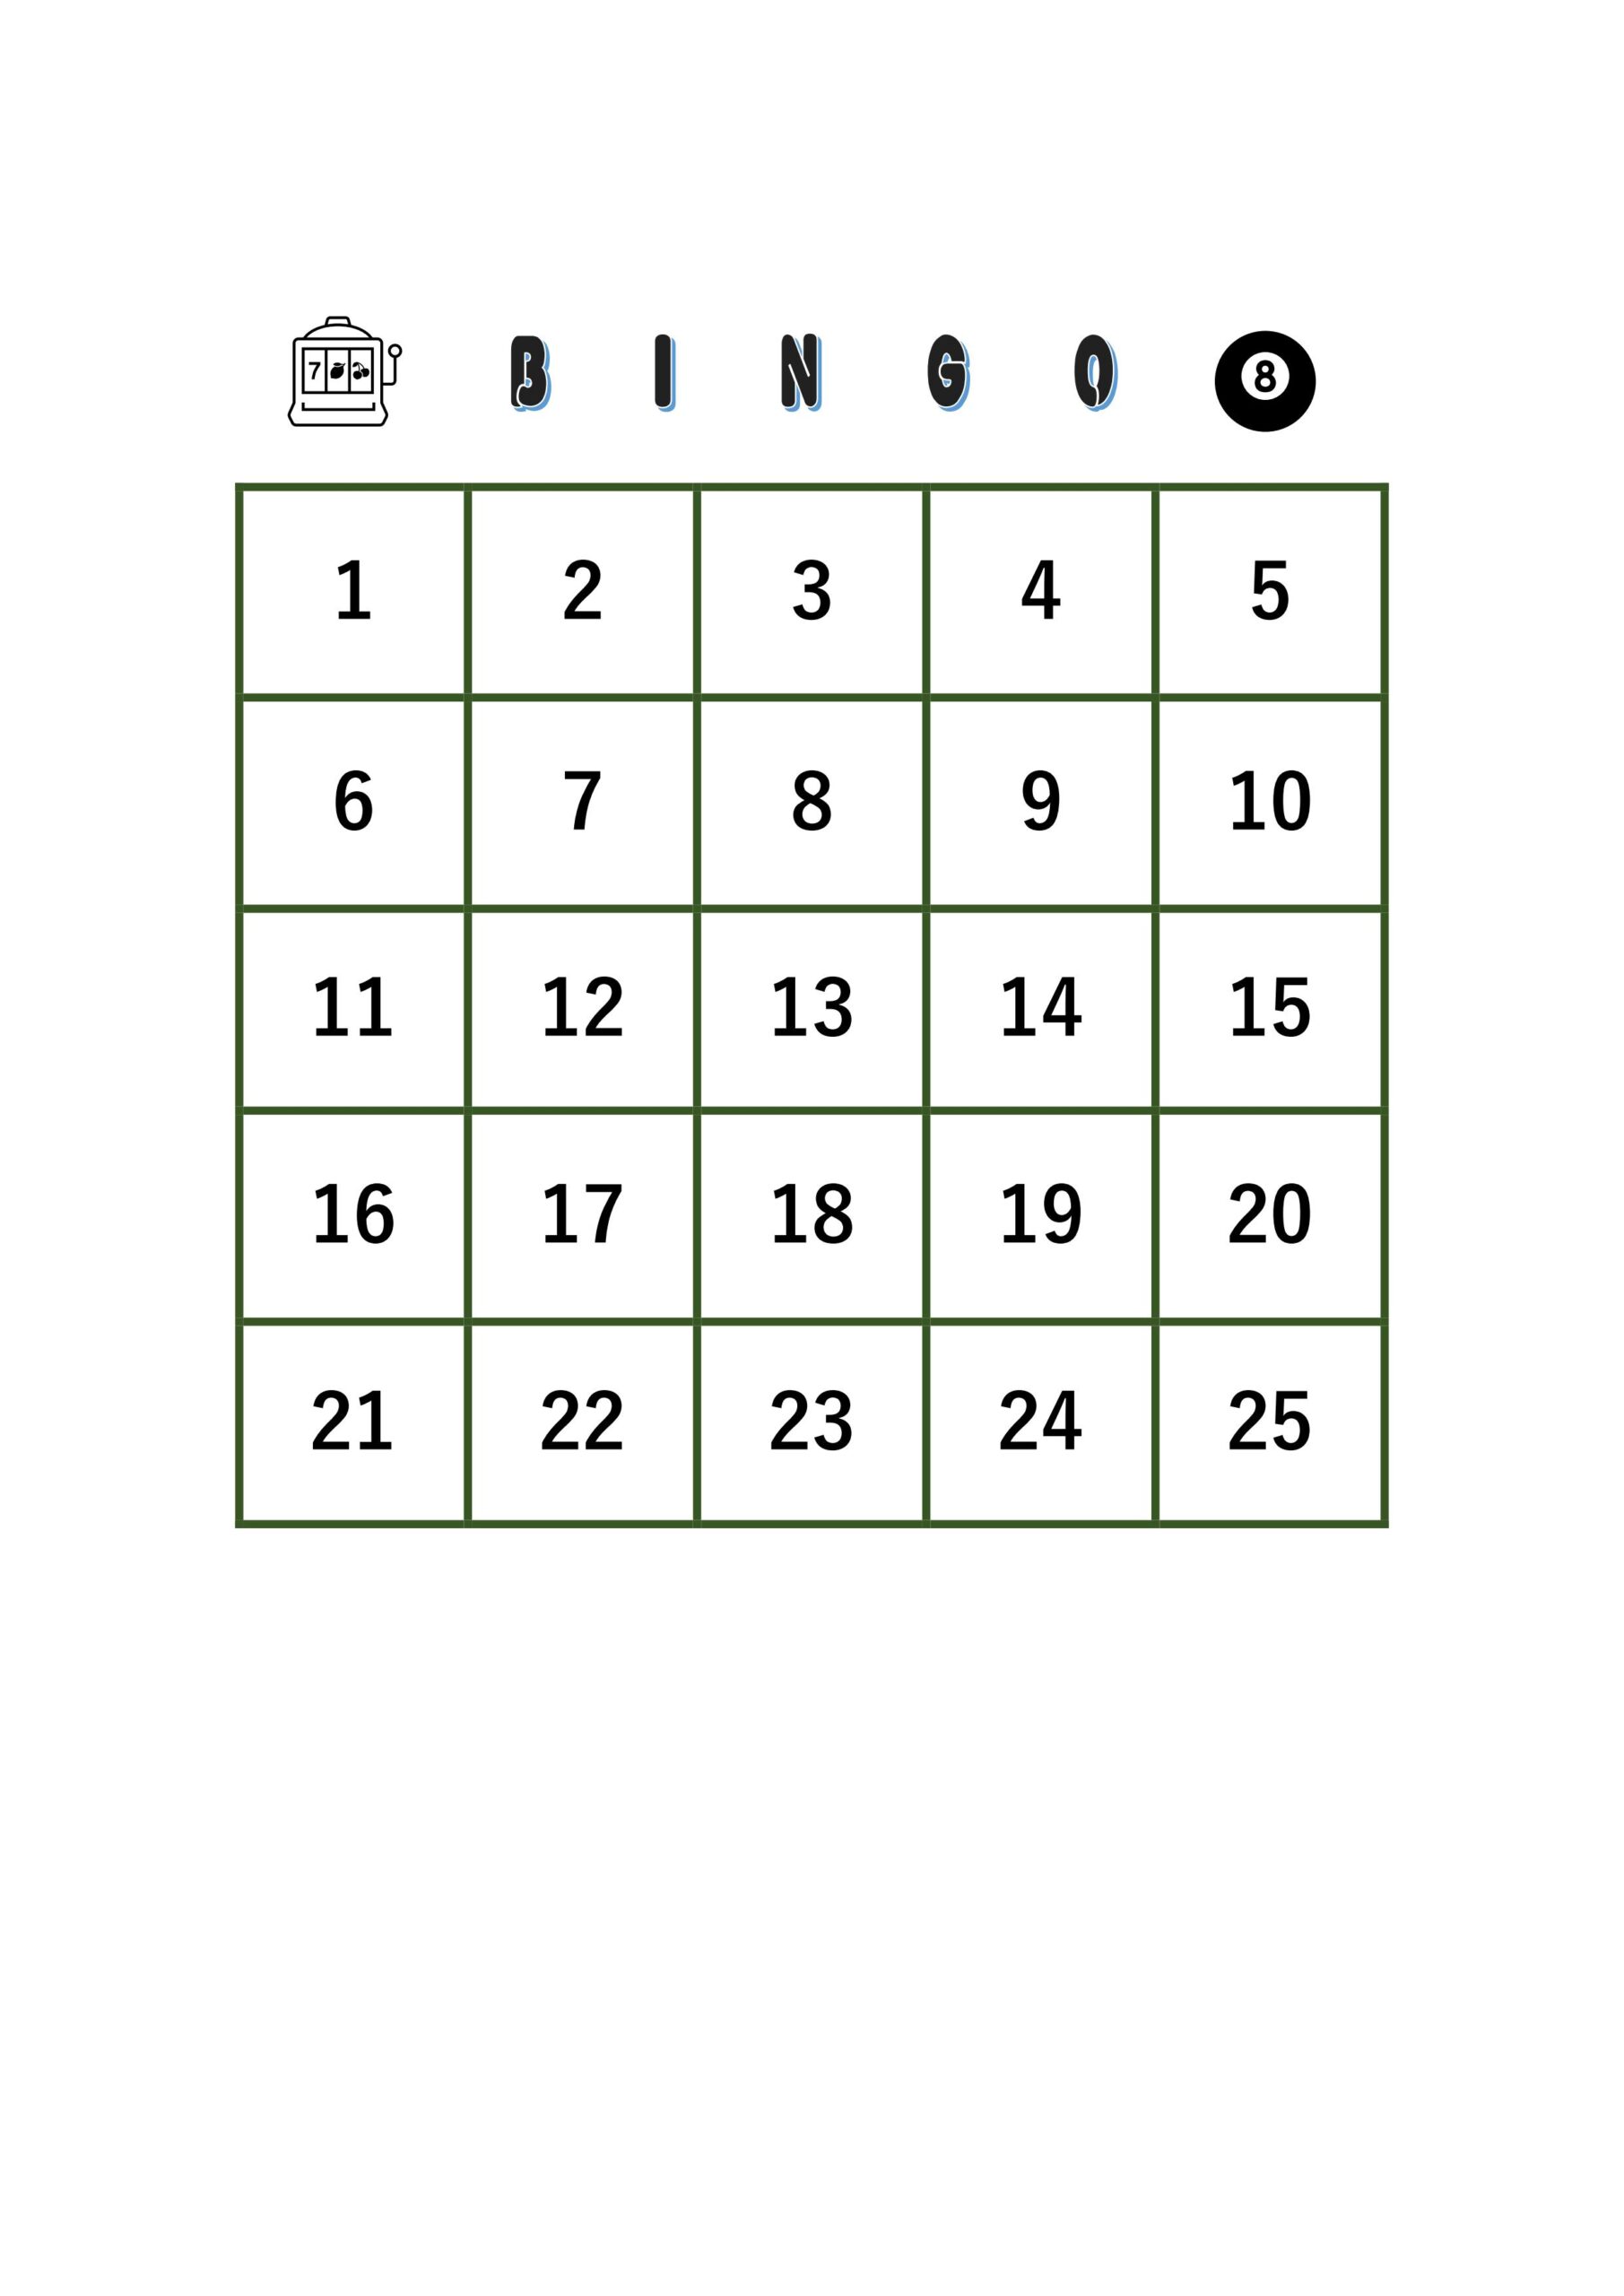 学校行事や会社での飲み会と忘年会や懇親会で使えるビンゴゲームチェック表のテンプレートとなります。ExcelとWordで数字を入れて作成後に印刷する事で利用可能です。一般的なビンゴゲームのカードを作成しました。縦横5×5の表に数字を入